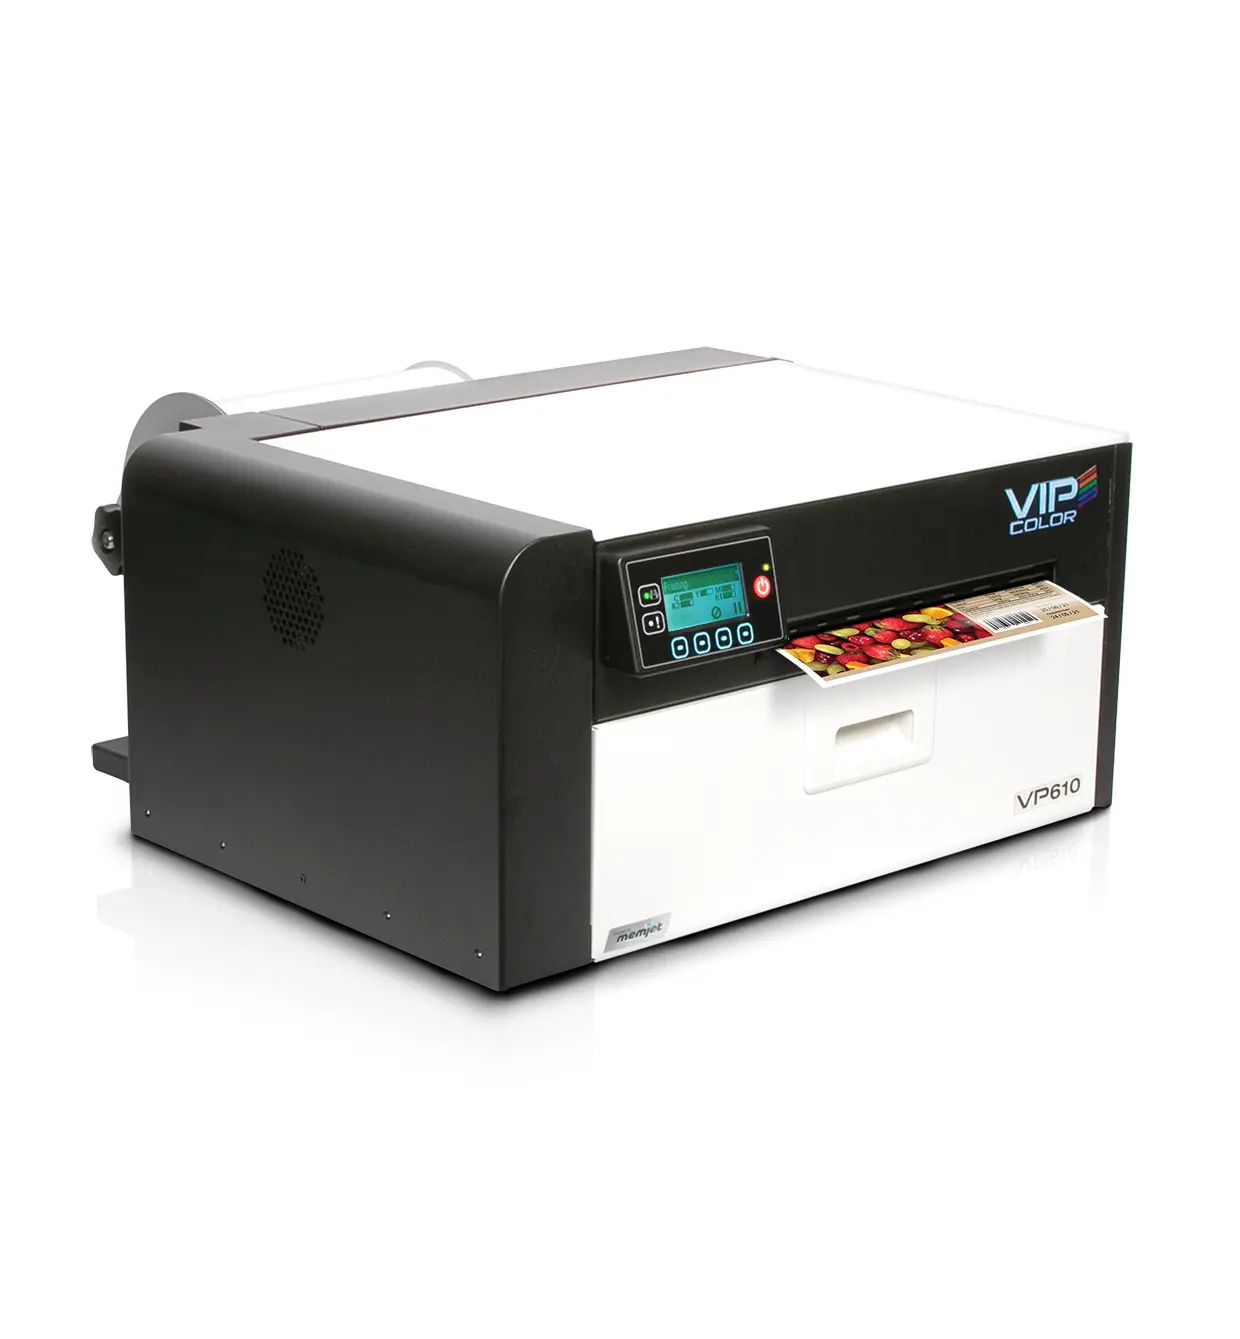 Rightint 1600X1600DPI VP610 kaliteli ürün Memjet yazıcı için mürekkep püskürtmeli baskı için uygun parlak ve mat etiket kağıdı